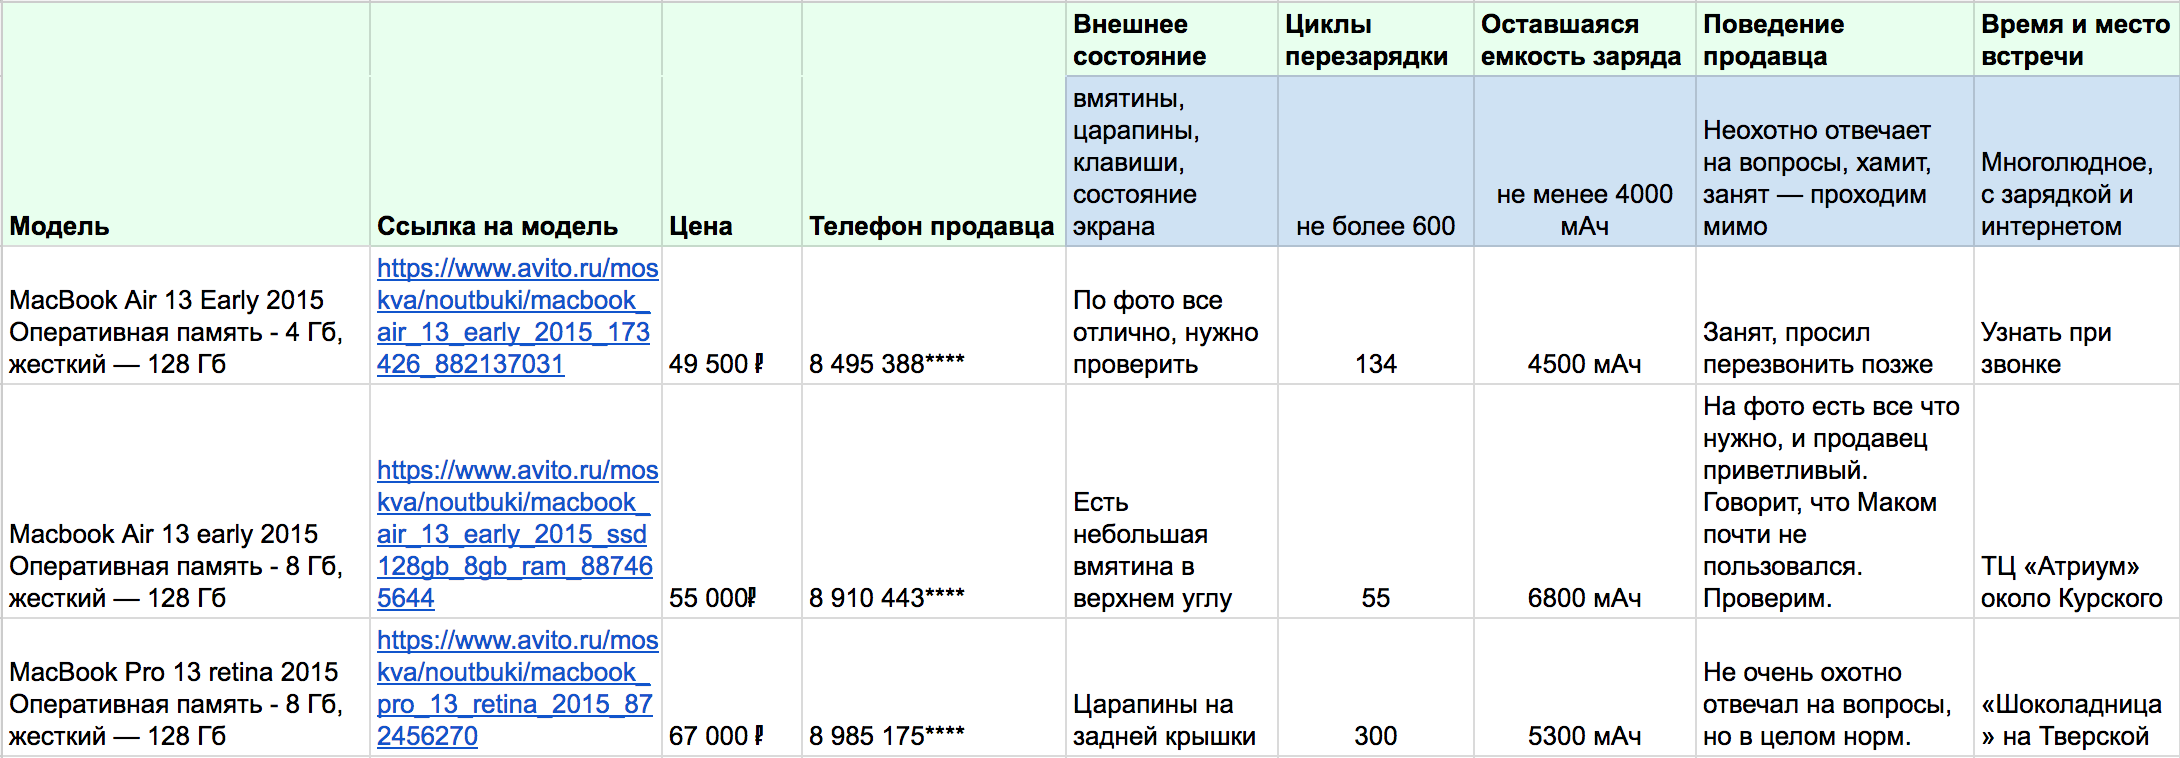 Сравнение Макбуков в экселевской таблице